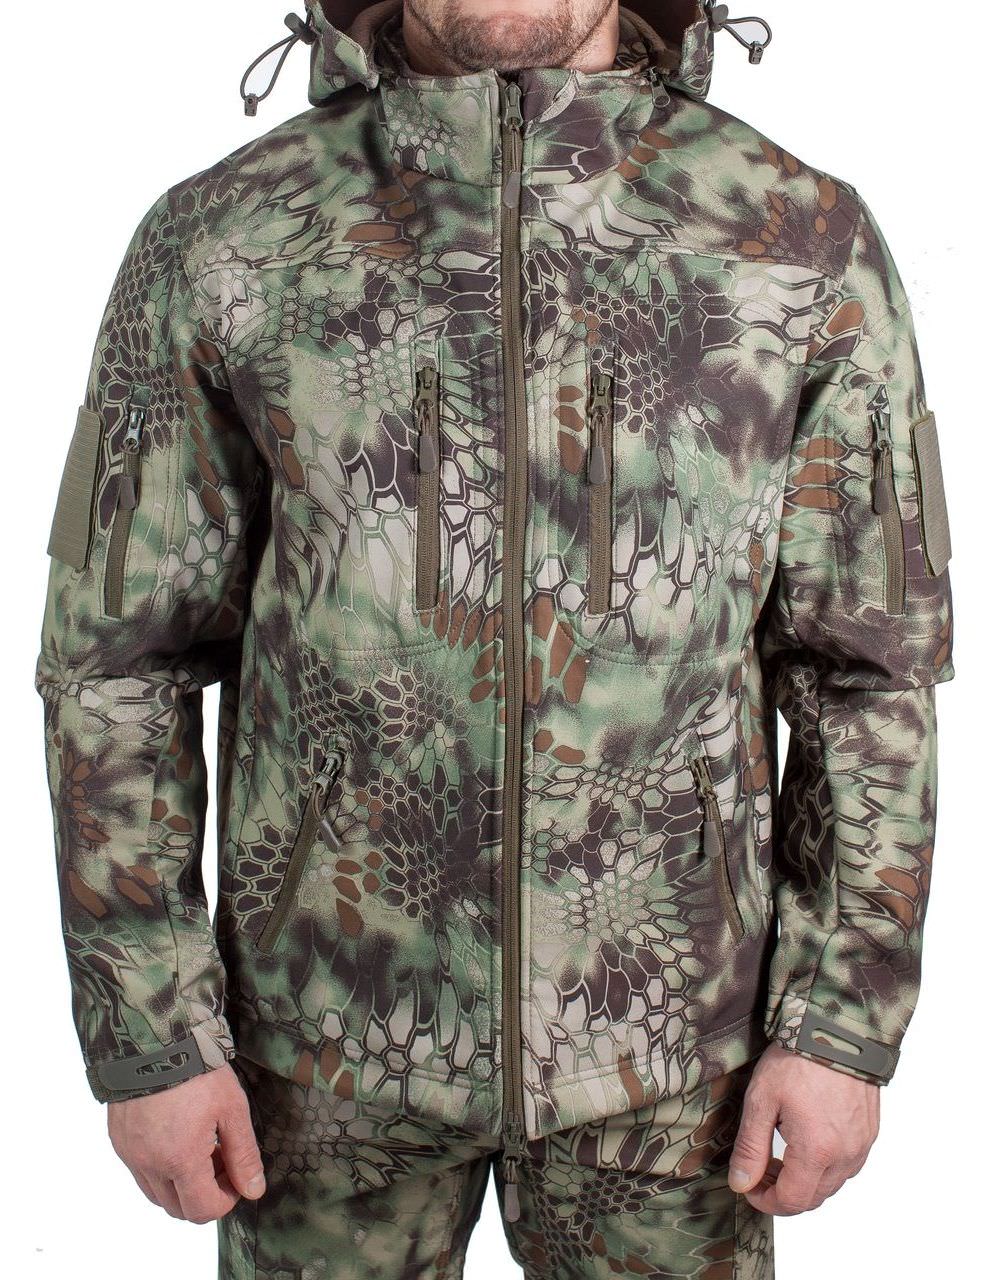 Куртка МПА-26-01 КМФ (софтшелл, питон лес), Magellan (500261063)